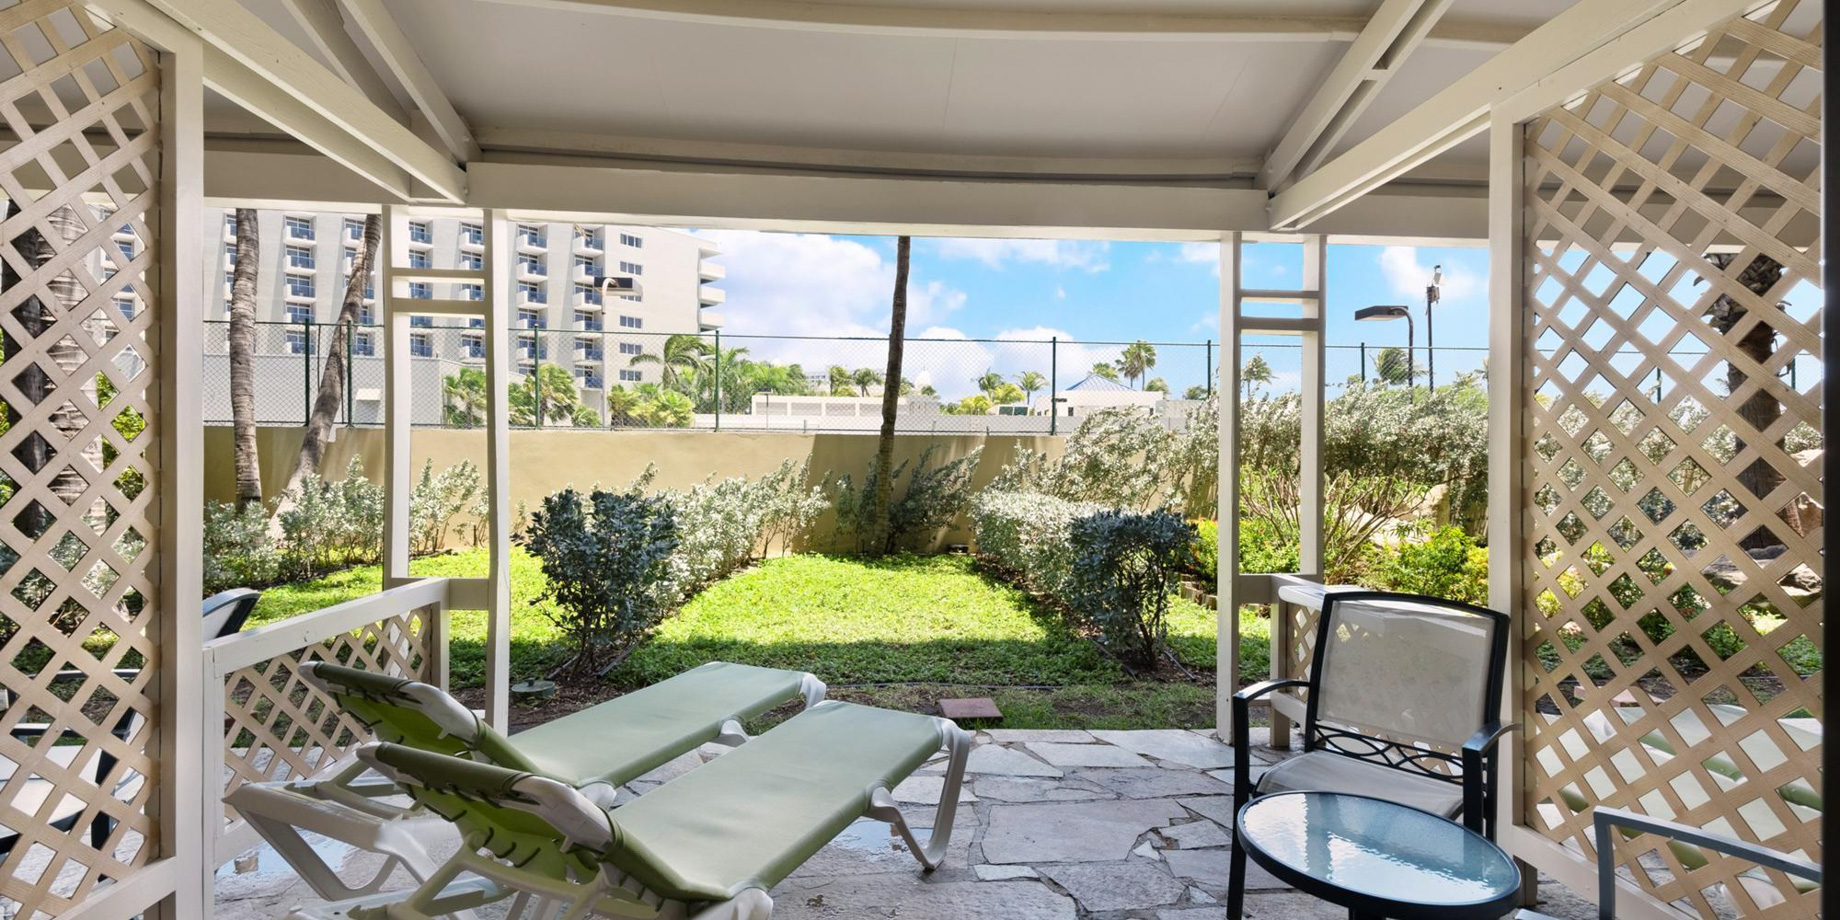 Barceló Aruba Palm Beach Resort – Noord, Aruba – Deluxe Lanai Garden View Room